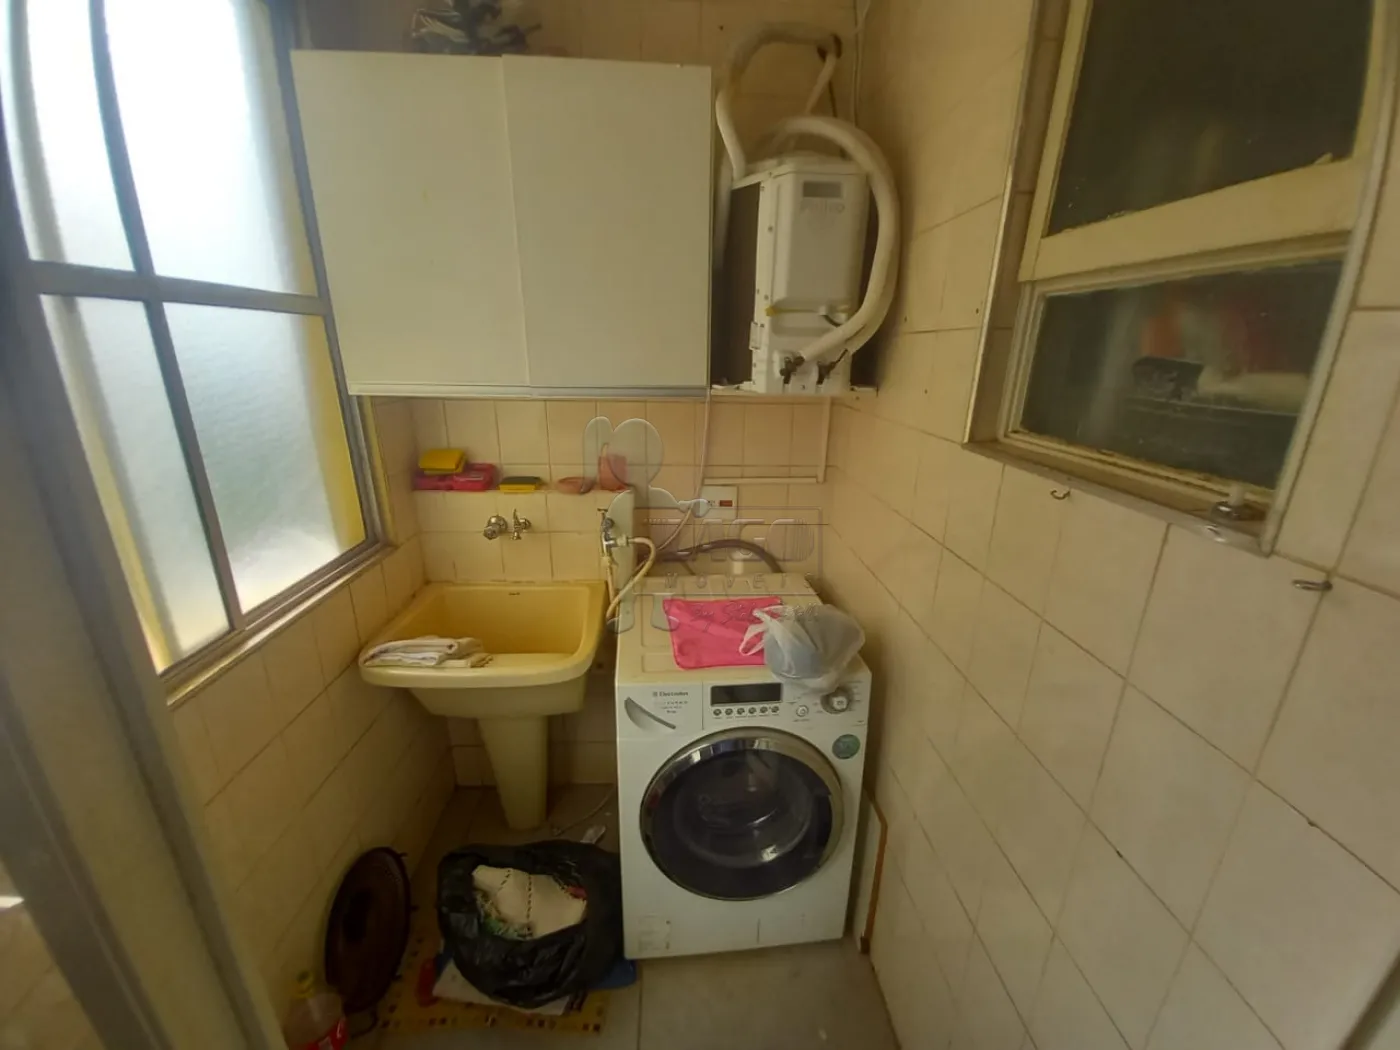 Alugar Apartamentos / Padrão em Ribeirão Preto R$ 1.100,00 - Foto 13